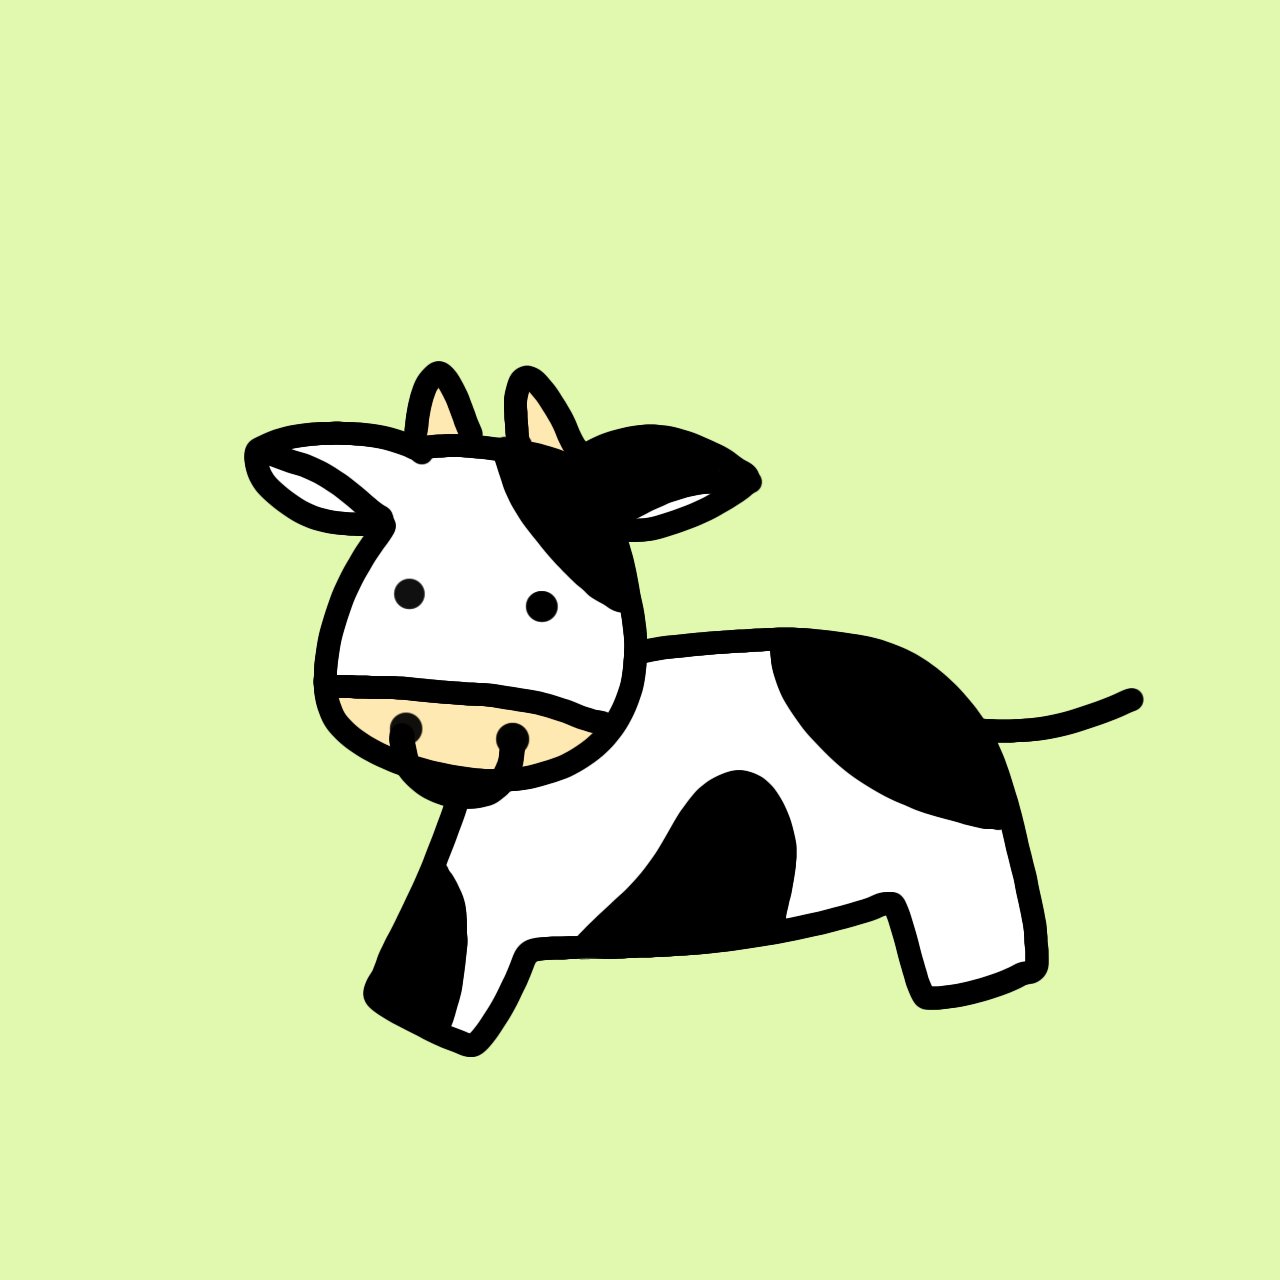 てんとう牛カンパニー 公式 てんとう牛 じゃない いわゆる牛柄の牛さん Rakunooコンテスト 牛好き うし好き 牛イラスト うしイラスト ゆるかわいい ゆるい絵 T Co Zpc2wg9xtt Twitter